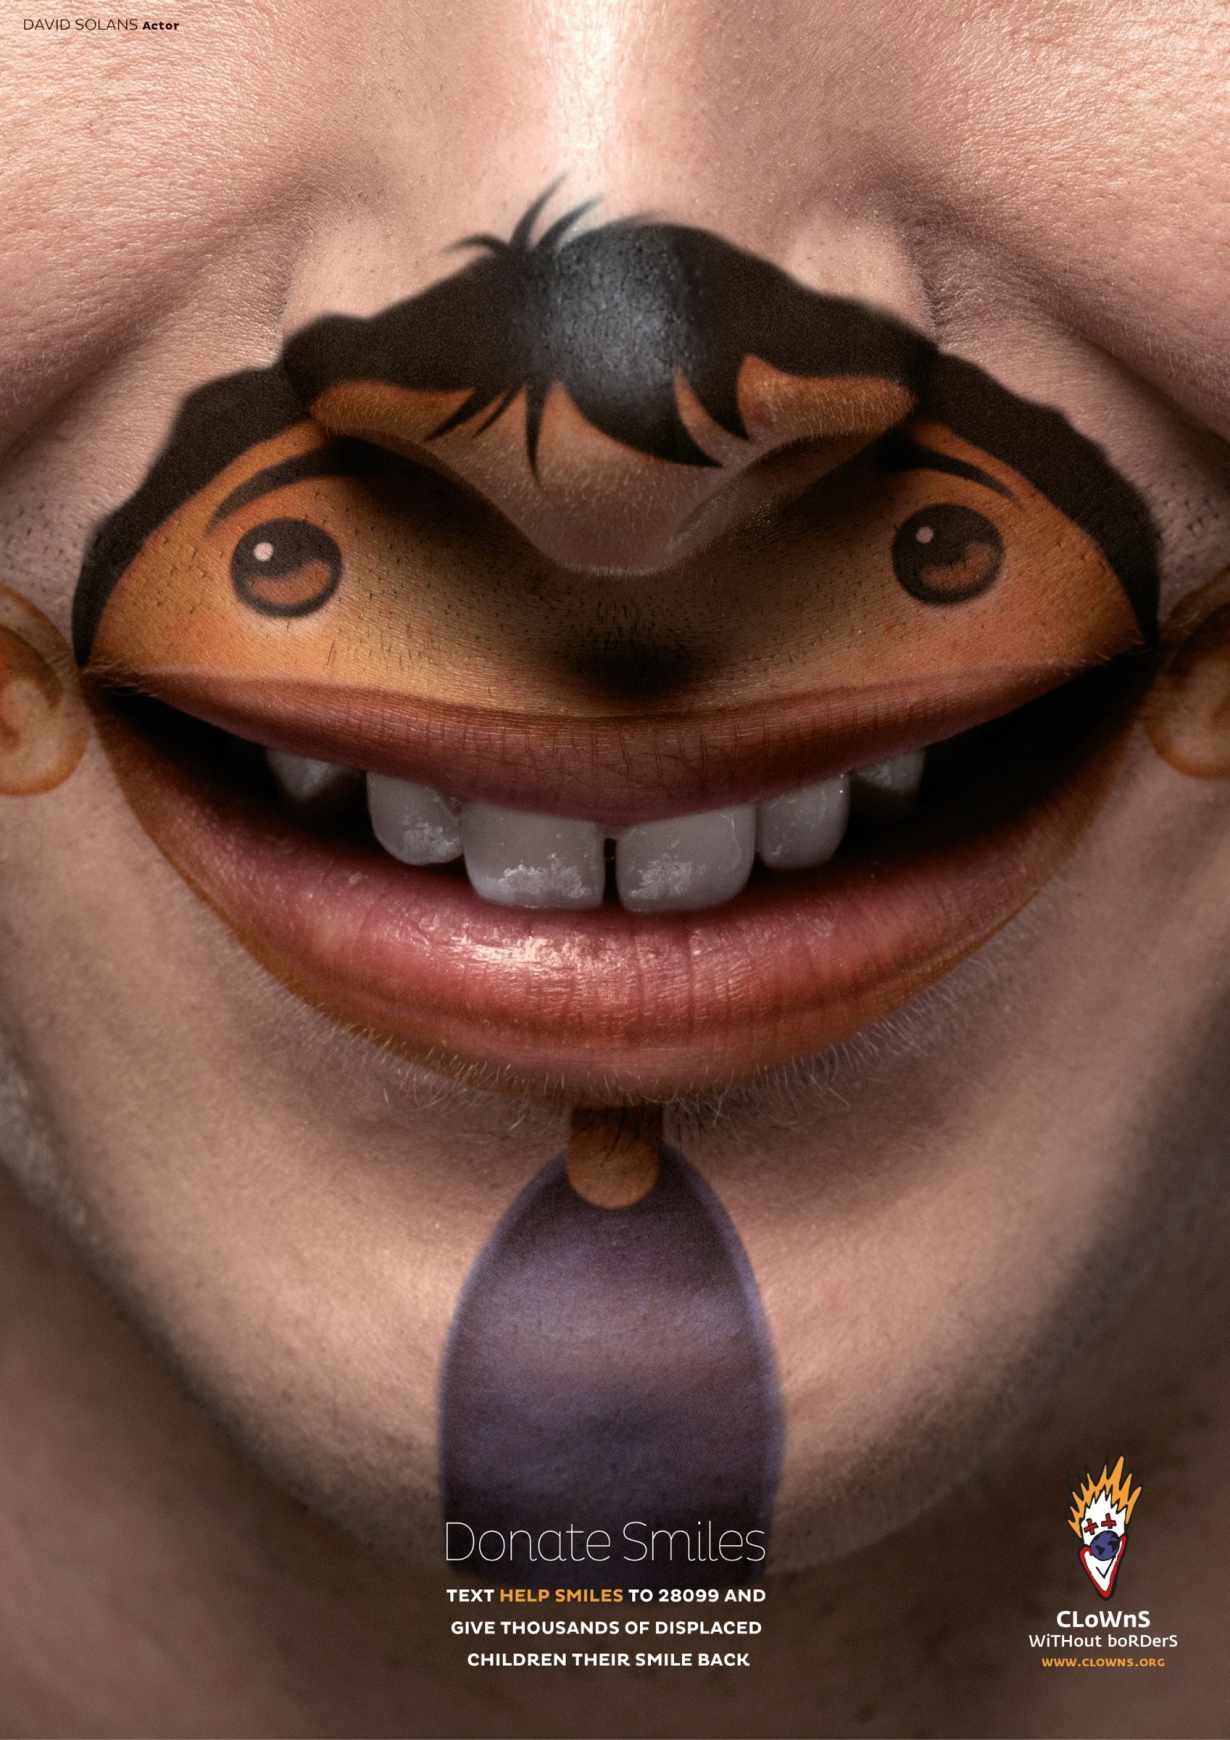 小丑无国界捐赠公益平面创意广告笑脸篇策划设计1